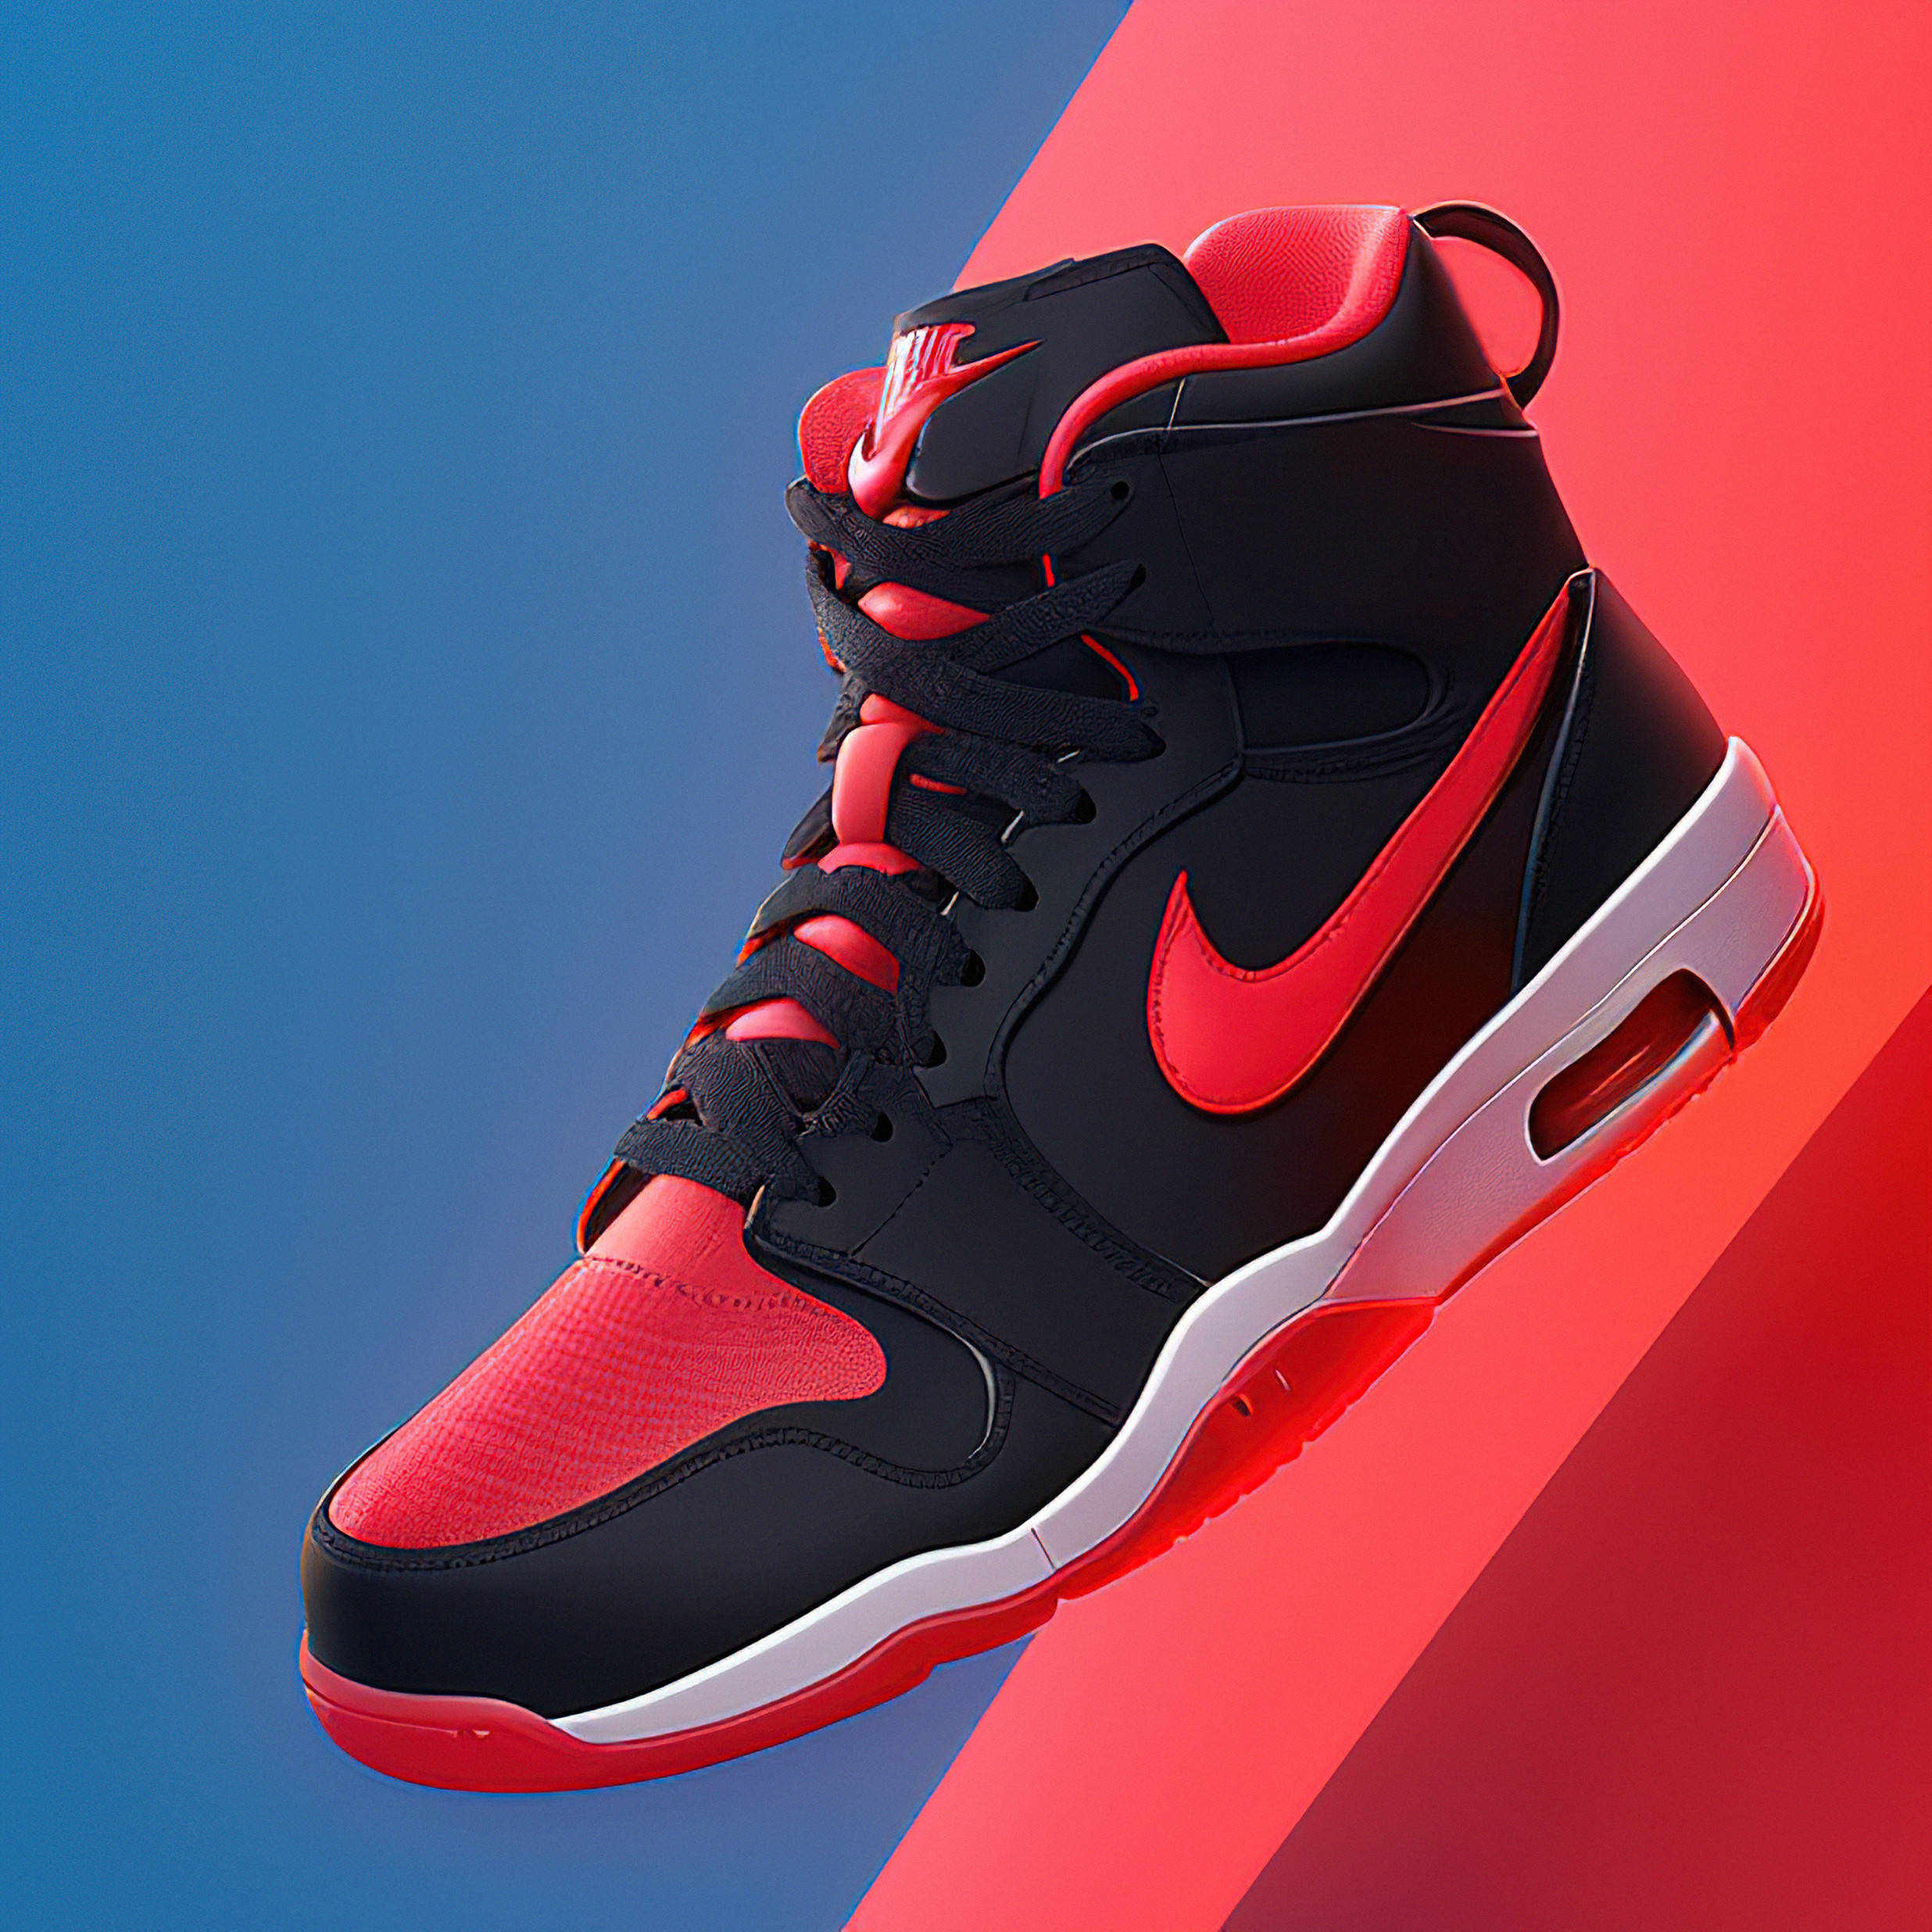 Concept art of Nike air Jordan 1 in the future 